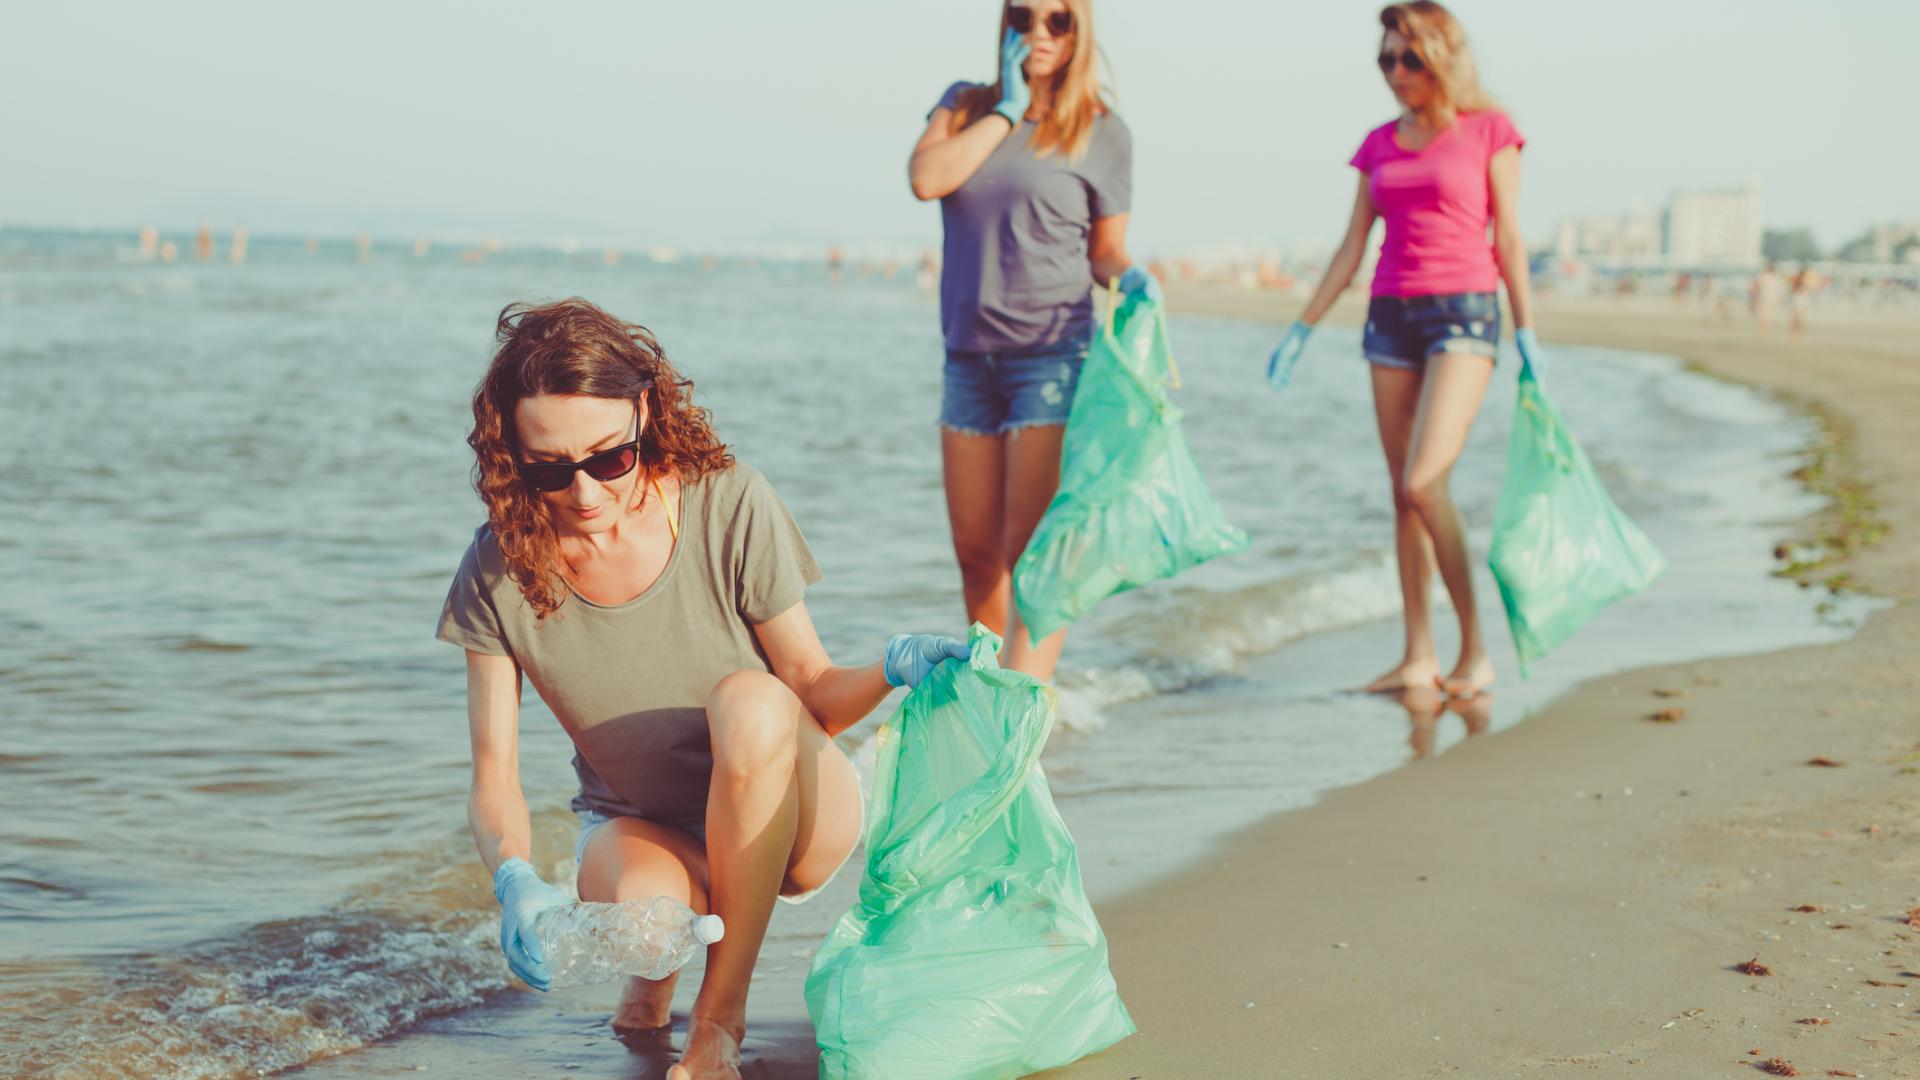 Frauen sammeln Plastik am Strand